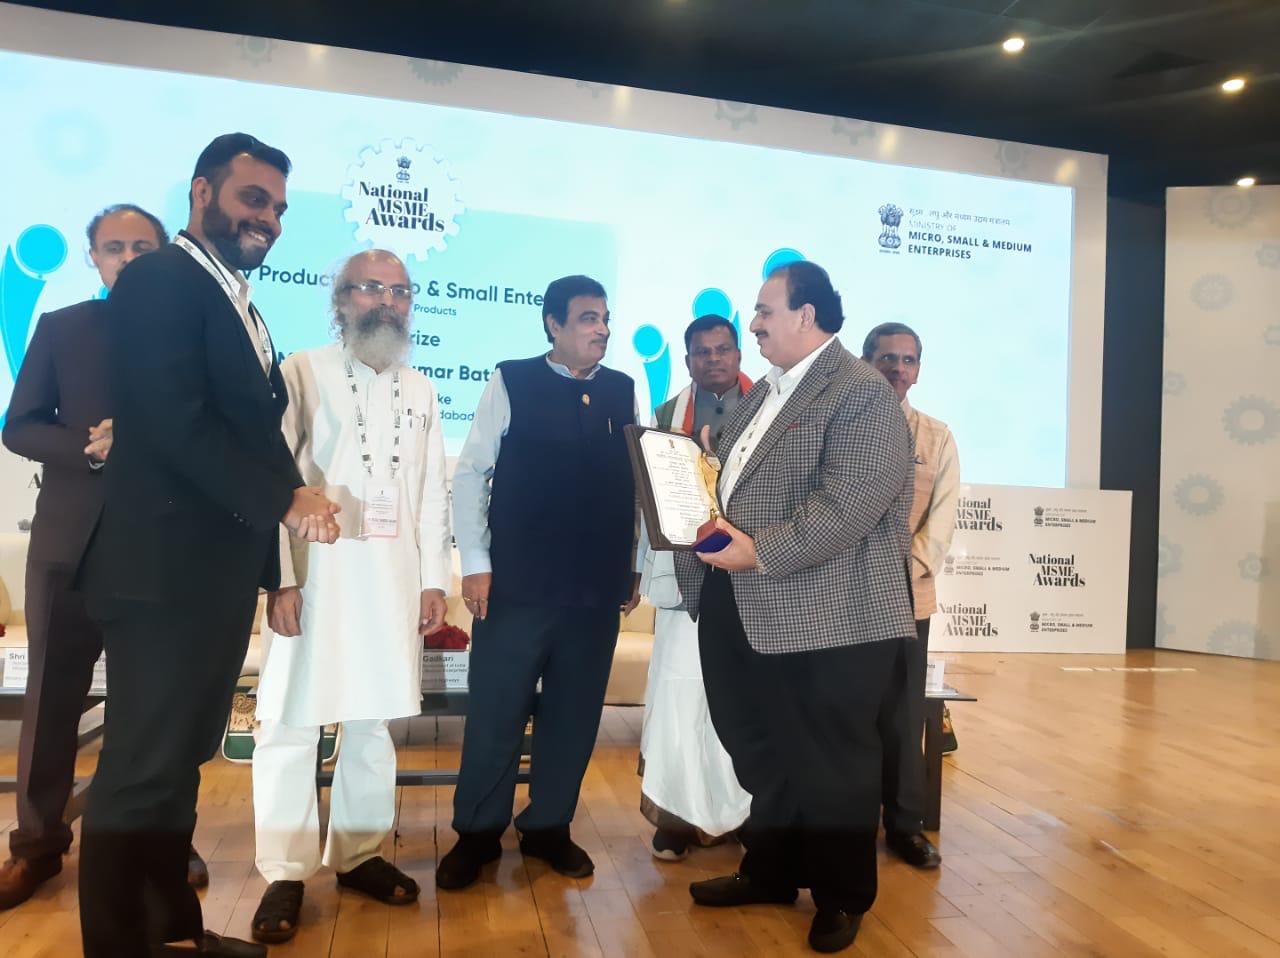 भारत सरकार के मंत्री द्वारा परफेक्ट ब्रेड ग्रुप के चेयरमैन एच.के.बतरा को उत्कृष्ट प्रदर्शन के लिए दिया पुरस्कार